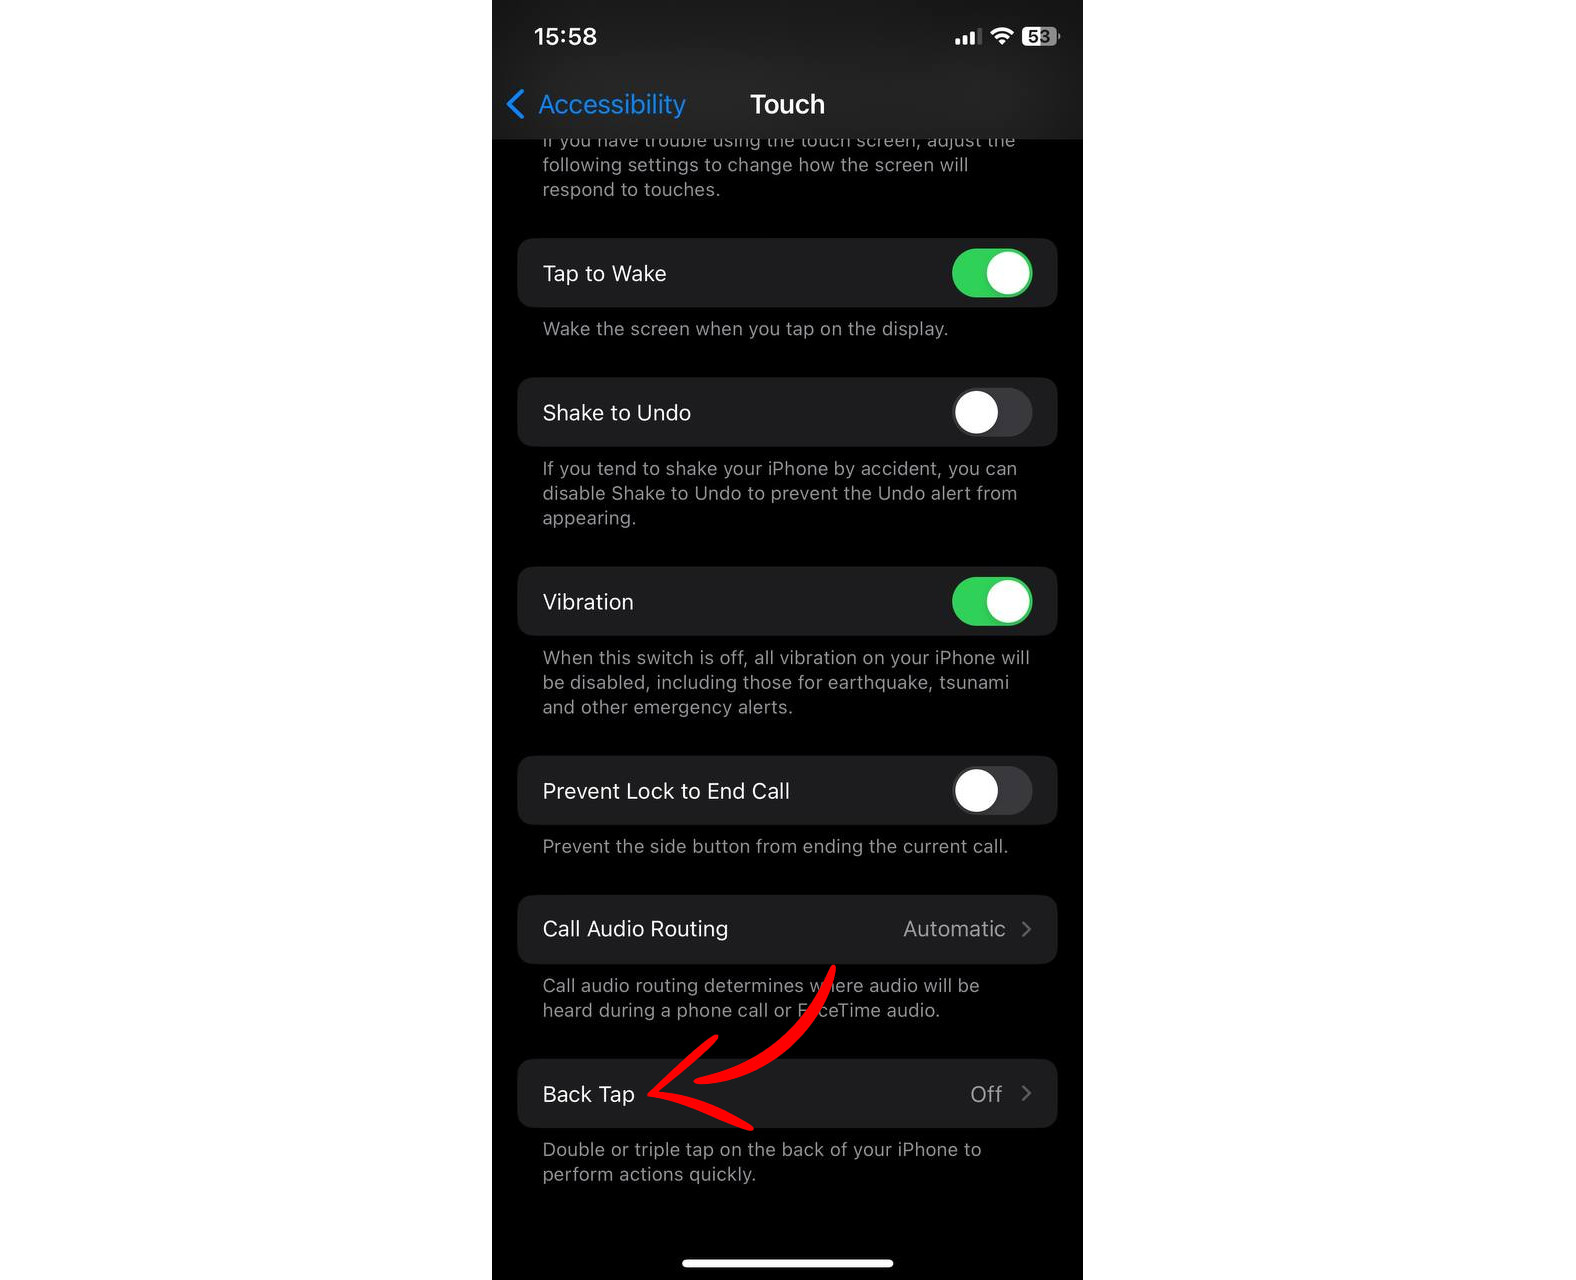 Back Tap option in iPhone settings menu